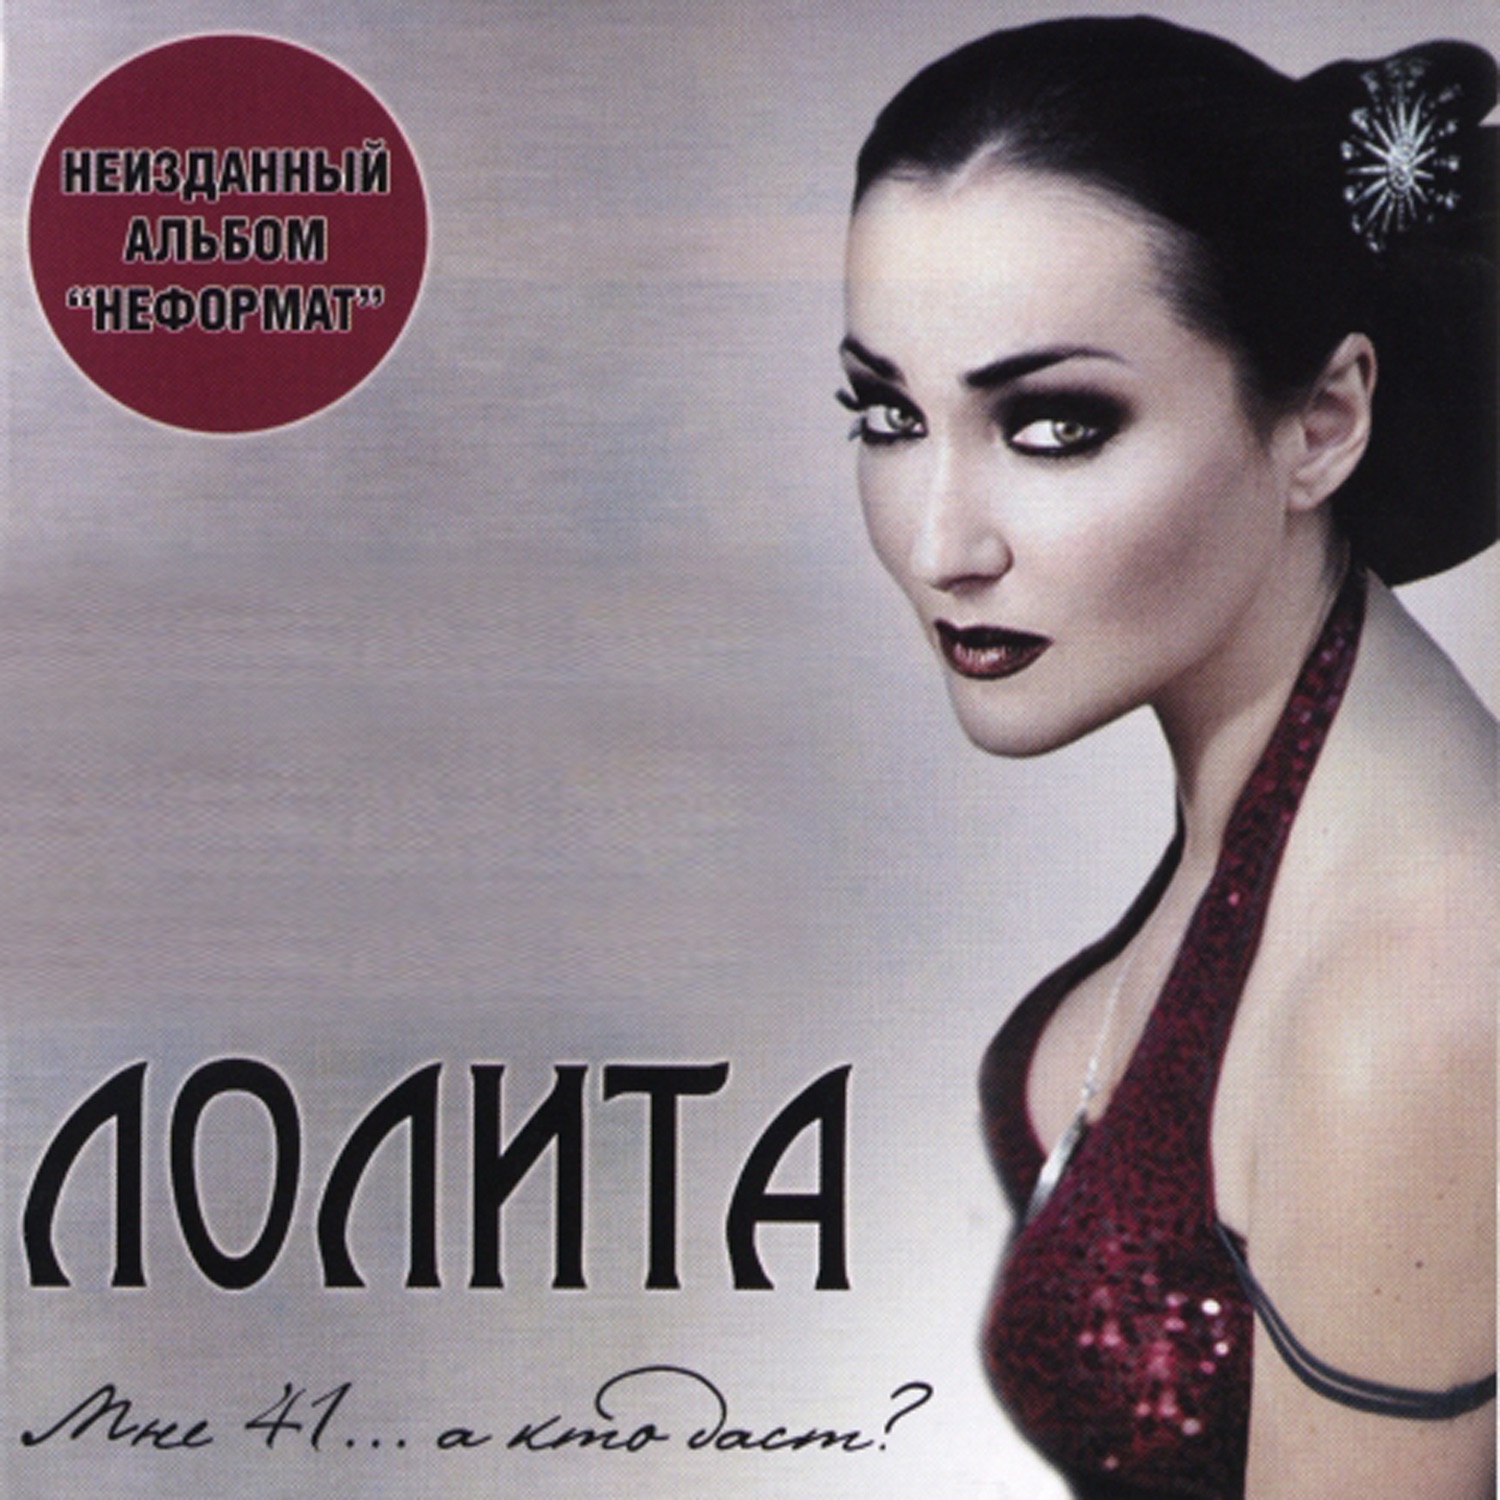 Лолита - мне 41... а кто даст? (2007) - лолита (милявская лолита) - русская музыка на cd - купить альбом на диске cd.